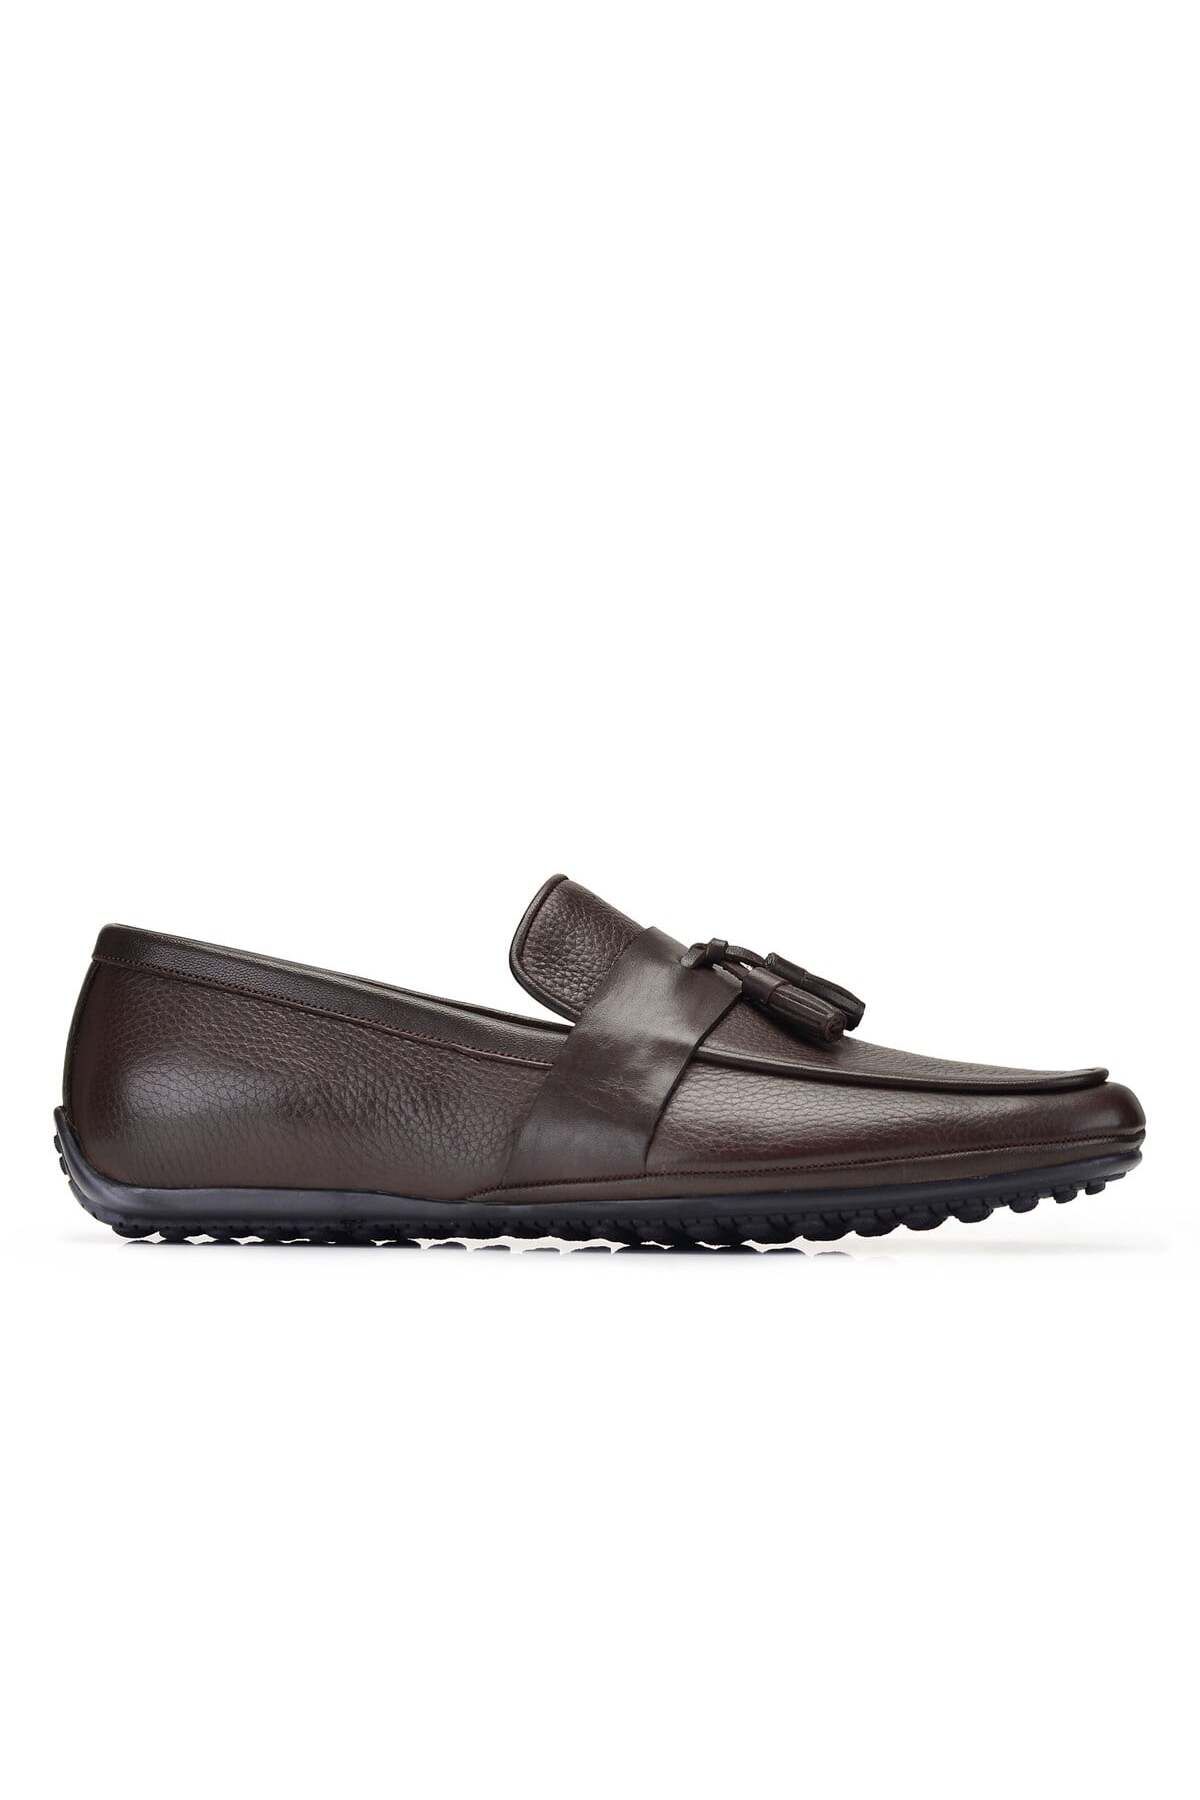 Nevzat Onay Hakiki Deri Kahverengi Günlük Loafer Erkek Ayakkabı -10322-